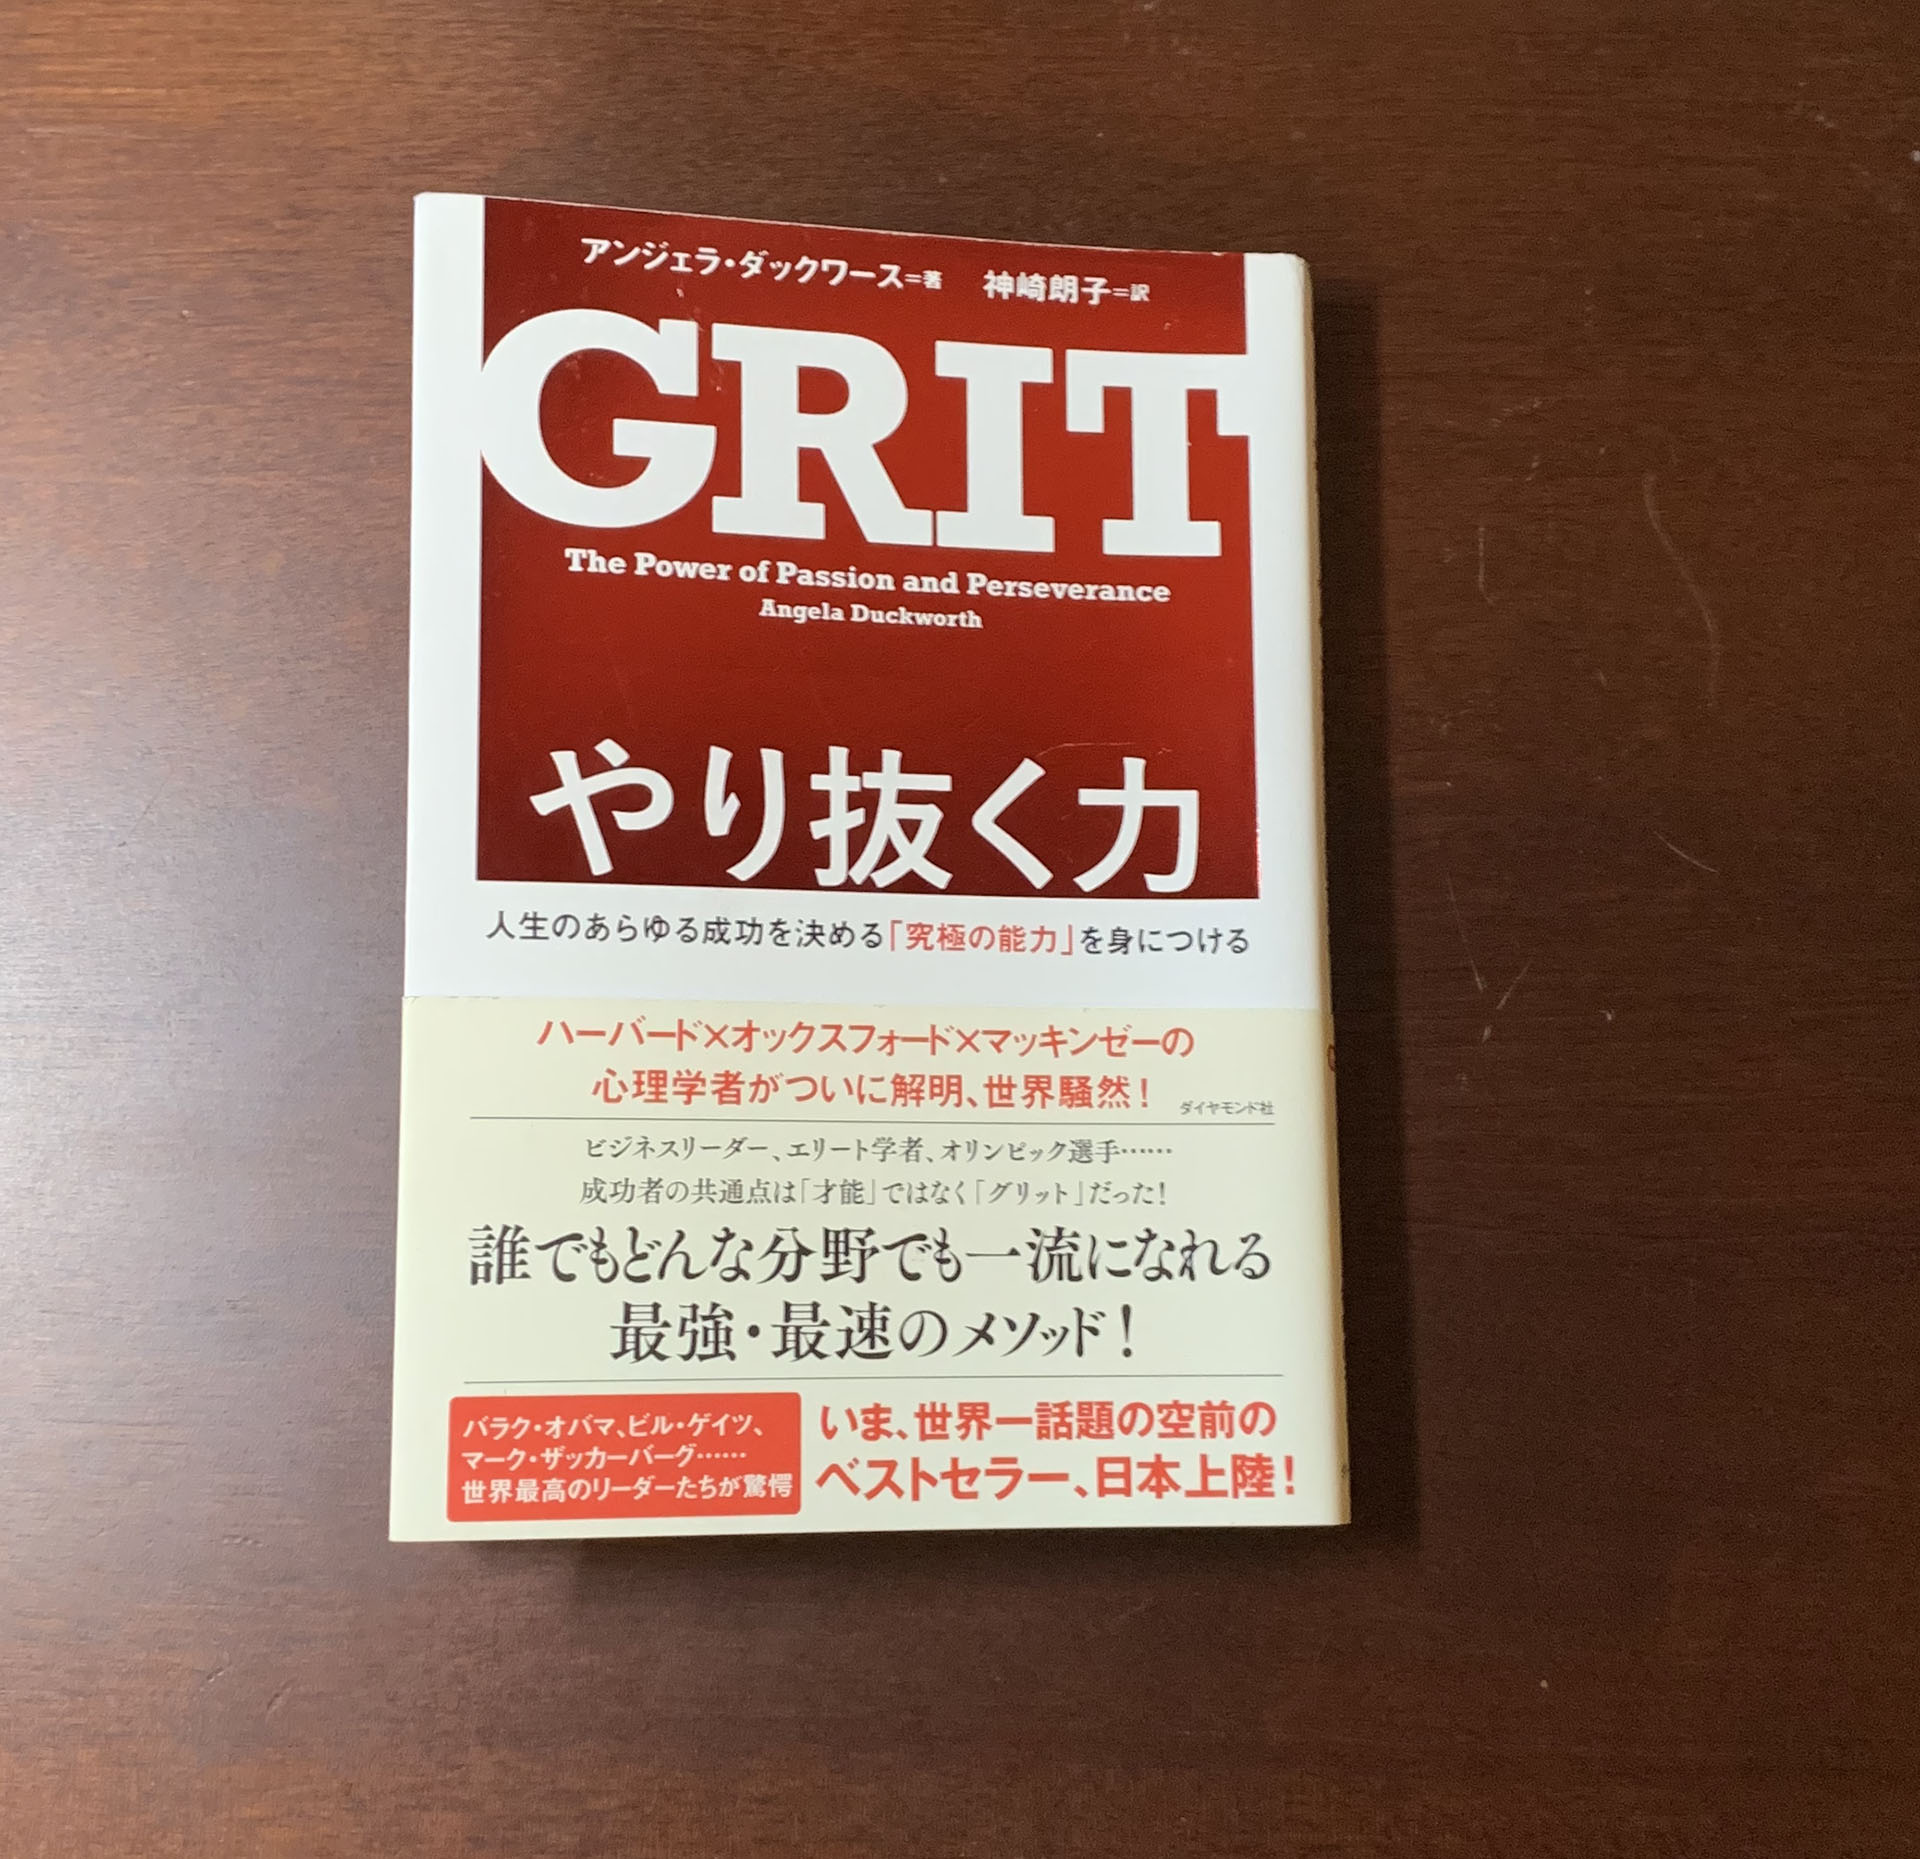 【書評】「やり抜く力 GRID(グリット)」やり遂げる人に共通する粘り強く、情熱を持つことの大切さ。才能と努力についての考察。